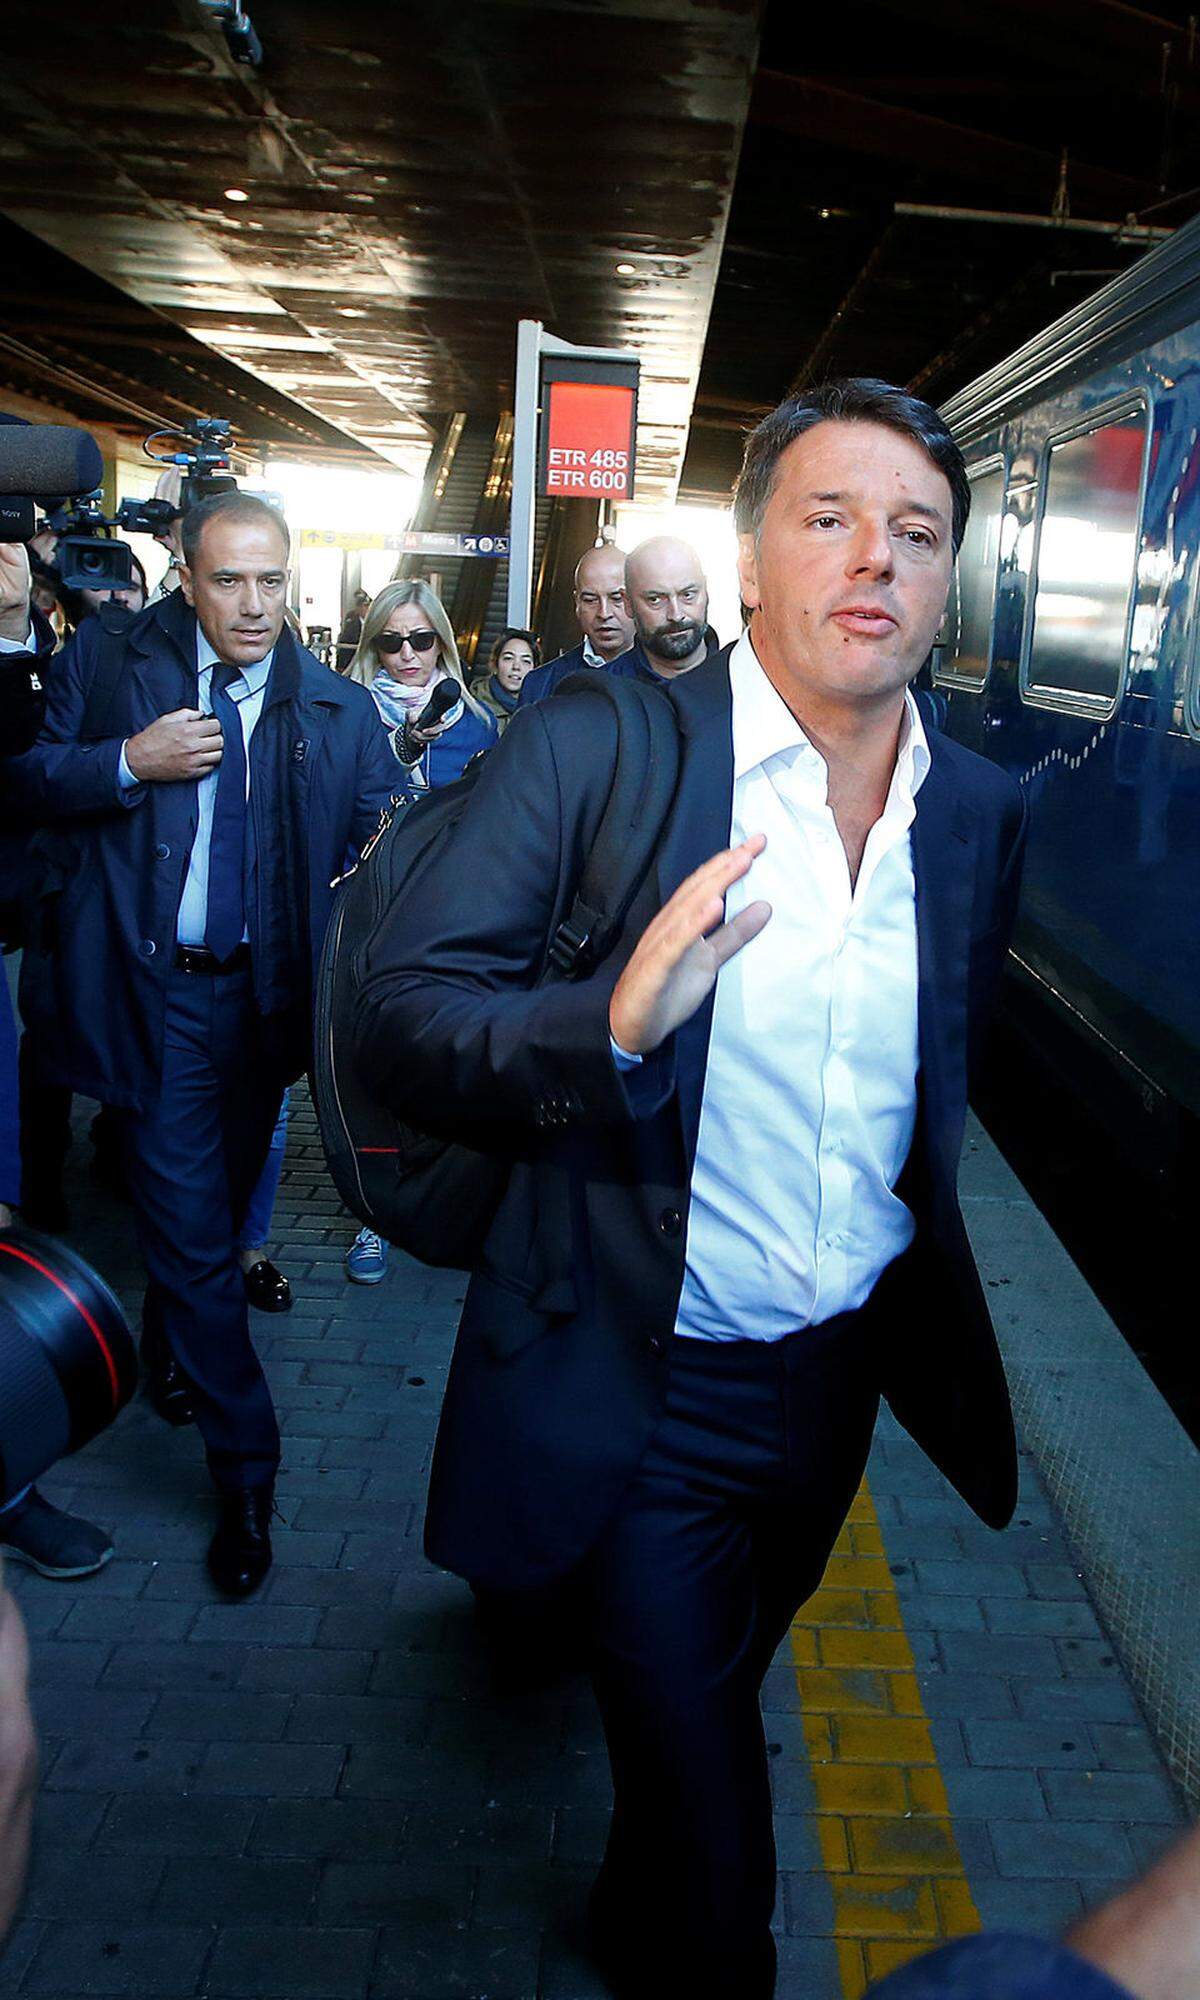 Partito Democratico (PD), die stärkste italienische Regierungspartei, hofft auf einen Sieg bei den Parlamentswahlen im Frühjahr. Der PD schickt Parteichef Matteo Renzi ins Rennen. Nach seinem Scheitern beim Verfassungsreferendum im Dezember 2016 und seinem Rücktritt vom Premieramt ist der 41-jährige Renzi nicht mehr der Dynamik und Optimismus versprühende Jungstar der italienischen Politik. Die PD kämpft mit der Konkurrenz der populistischen Fünf-Sterne-Bewegung, der ausländerfeindlichen Lega Nord sowie der Forza Italia um Ex-Premier Silvio Berlusconi. Die Renzi-Partei zahlt einen hohen Preis für die Spaltung des linken Lagers, die Politik der offenen Tore in punkto Einwanderung sowie für die fehlenden Resultate im Kampf gegen die Jugendarbeitslosigkeit, die bei mehr als 35 Prozent verharrt.